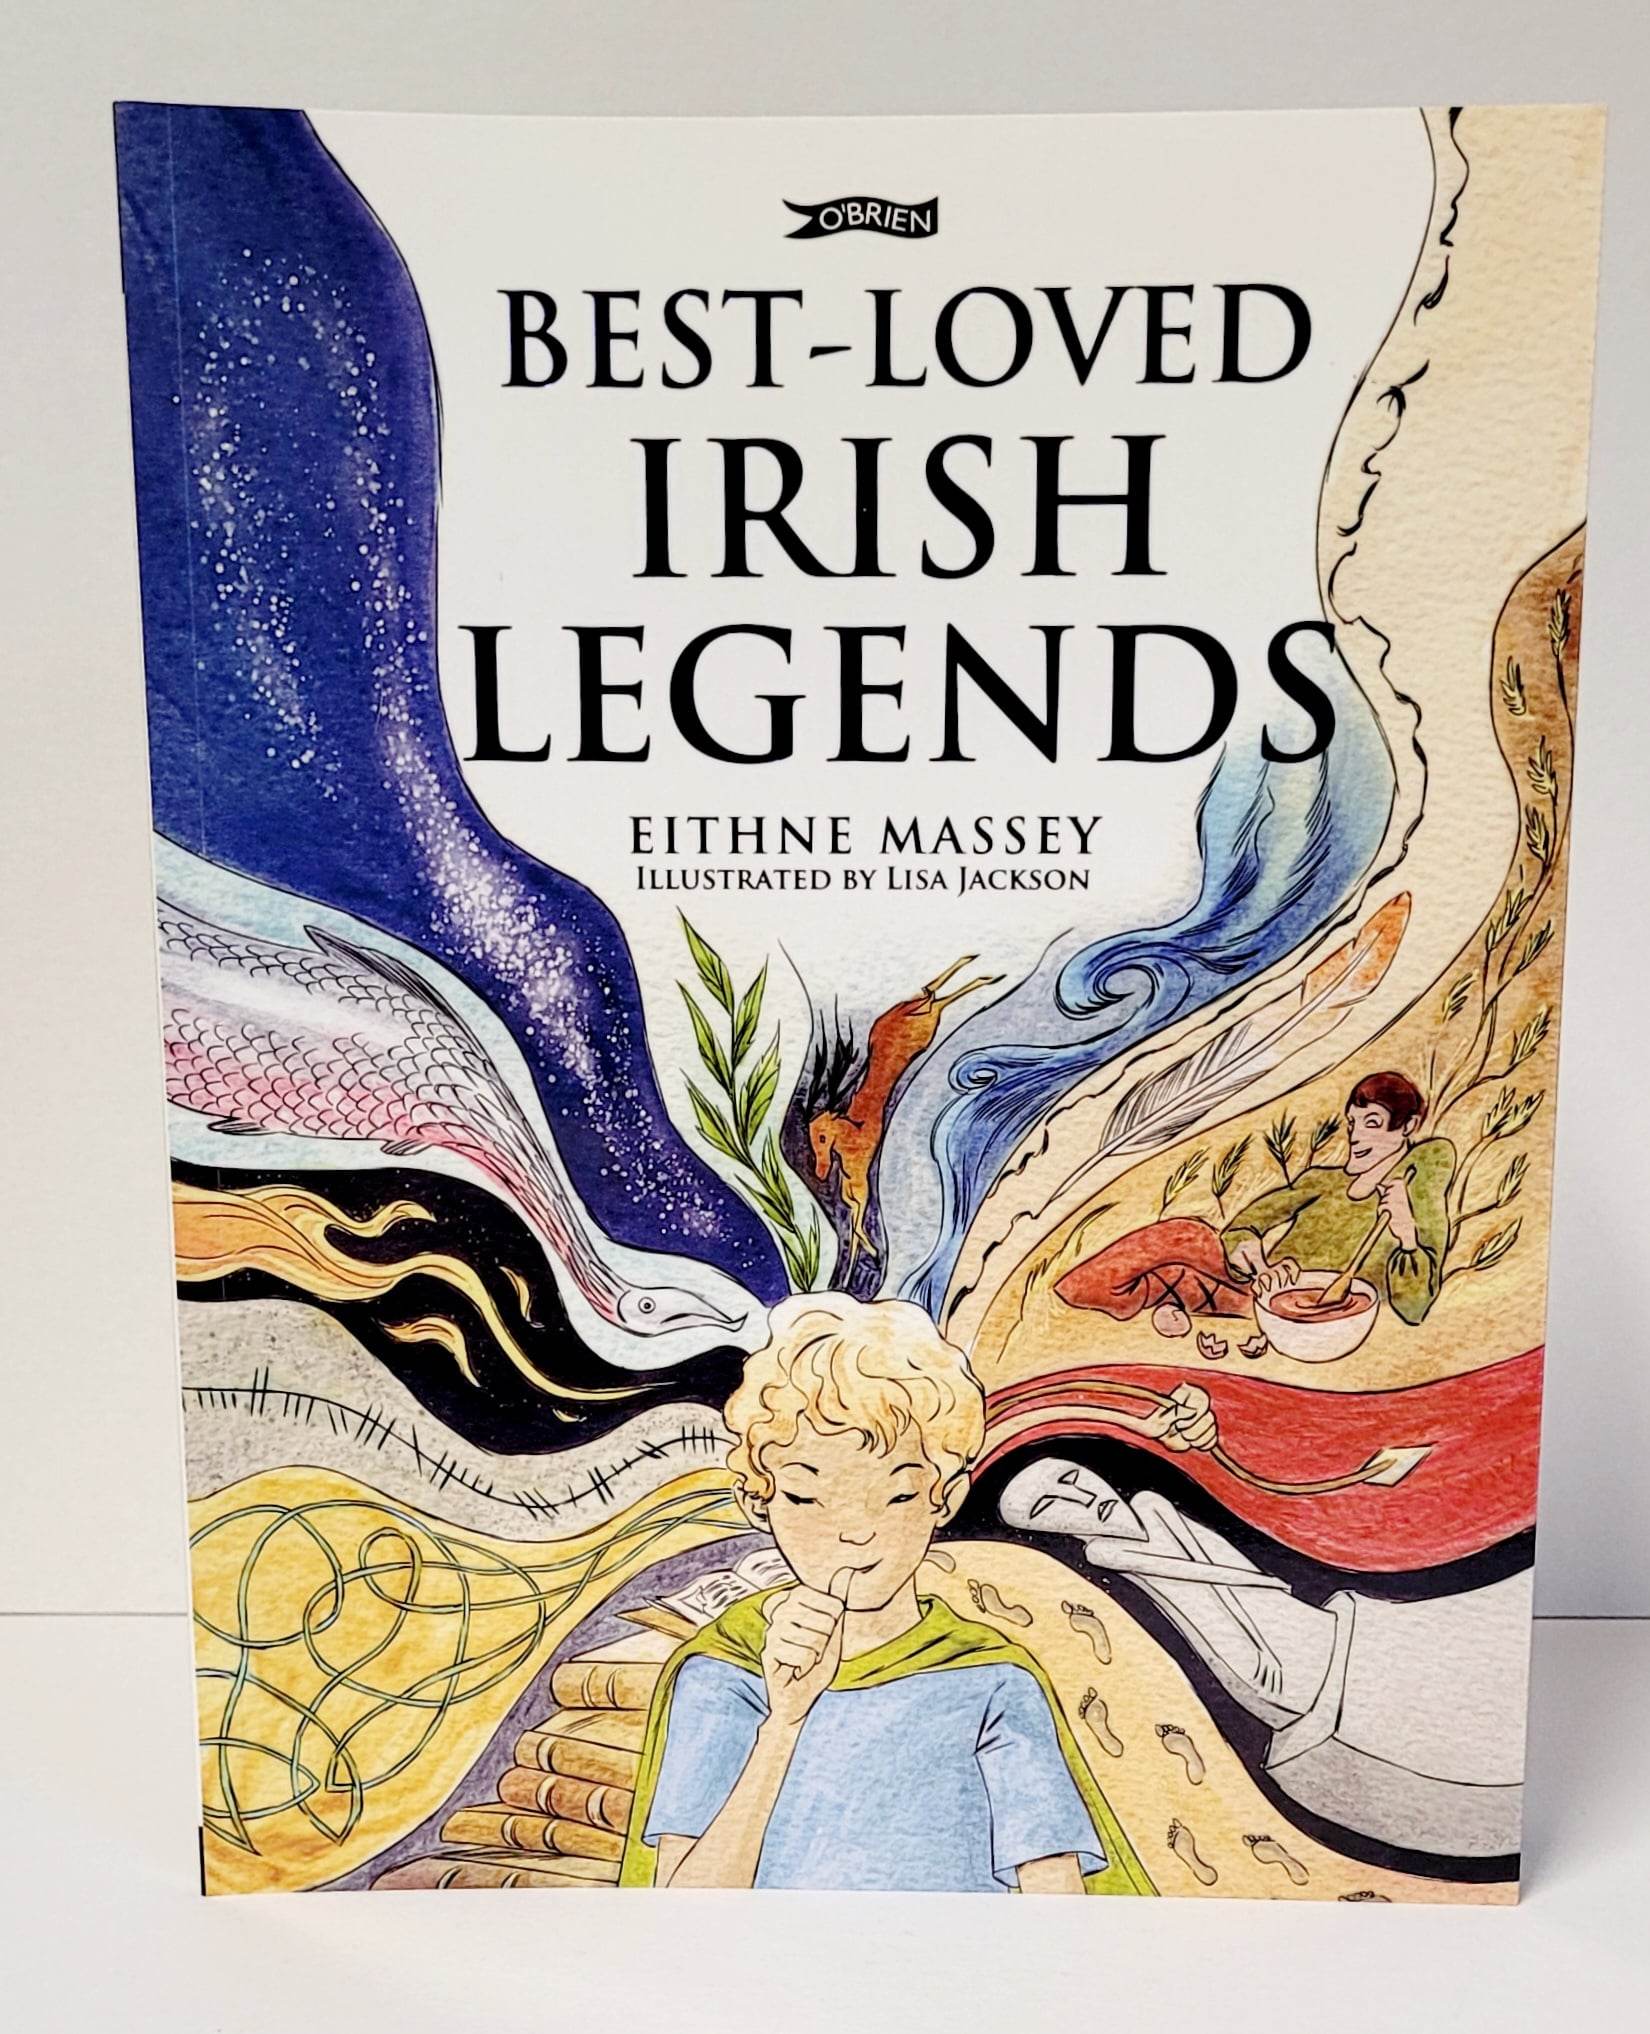 Best Loved Irish Legends by Eithne Massey